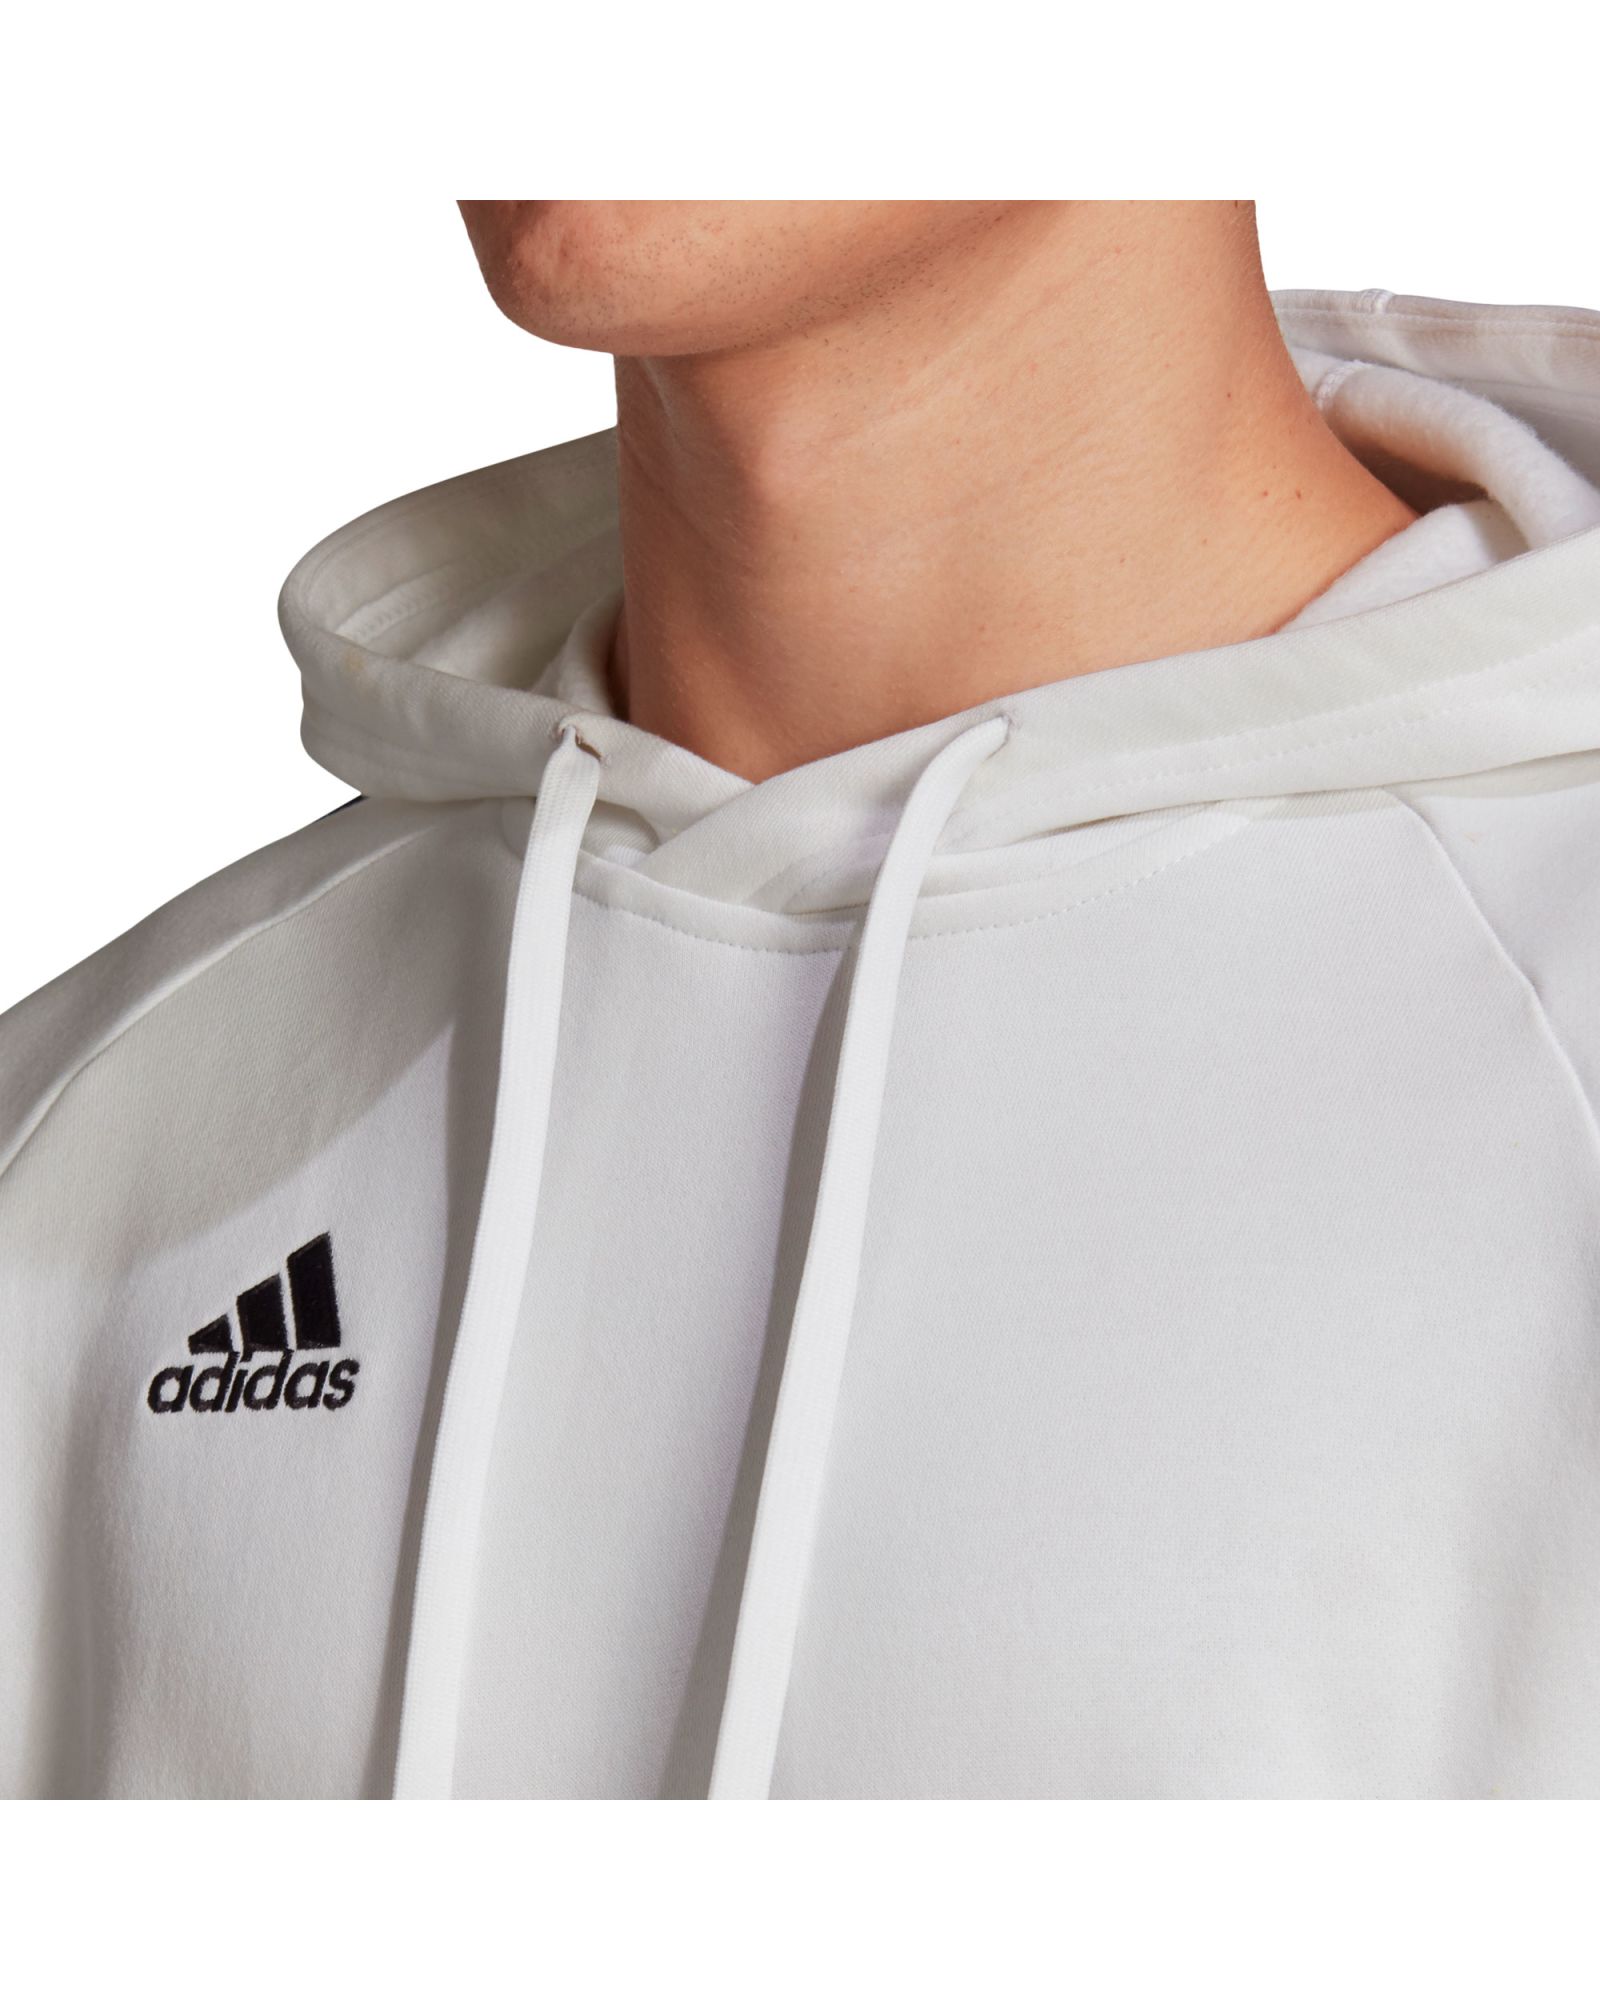 Sudadera Hombre Adidas Core 18 con capucha algodón - FS1895 - blanco